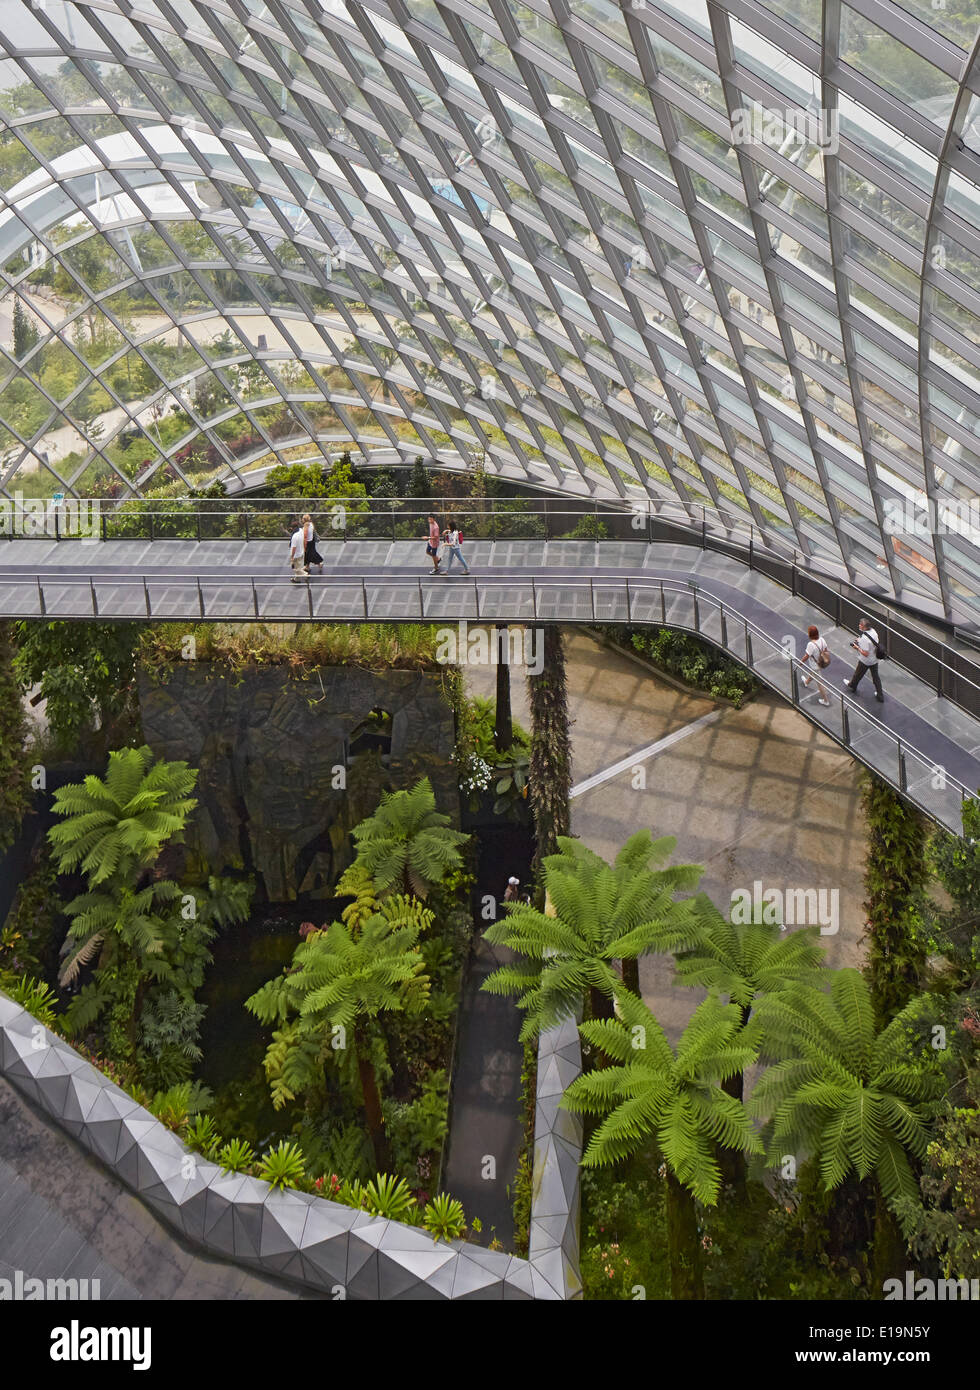 Gärten von Bay, Singapur, Singapur. Architekt: Wilkinson Eyre Architects, 2011. Innerhalb der tropischen Nebelwald Kuppel. Stockfoto